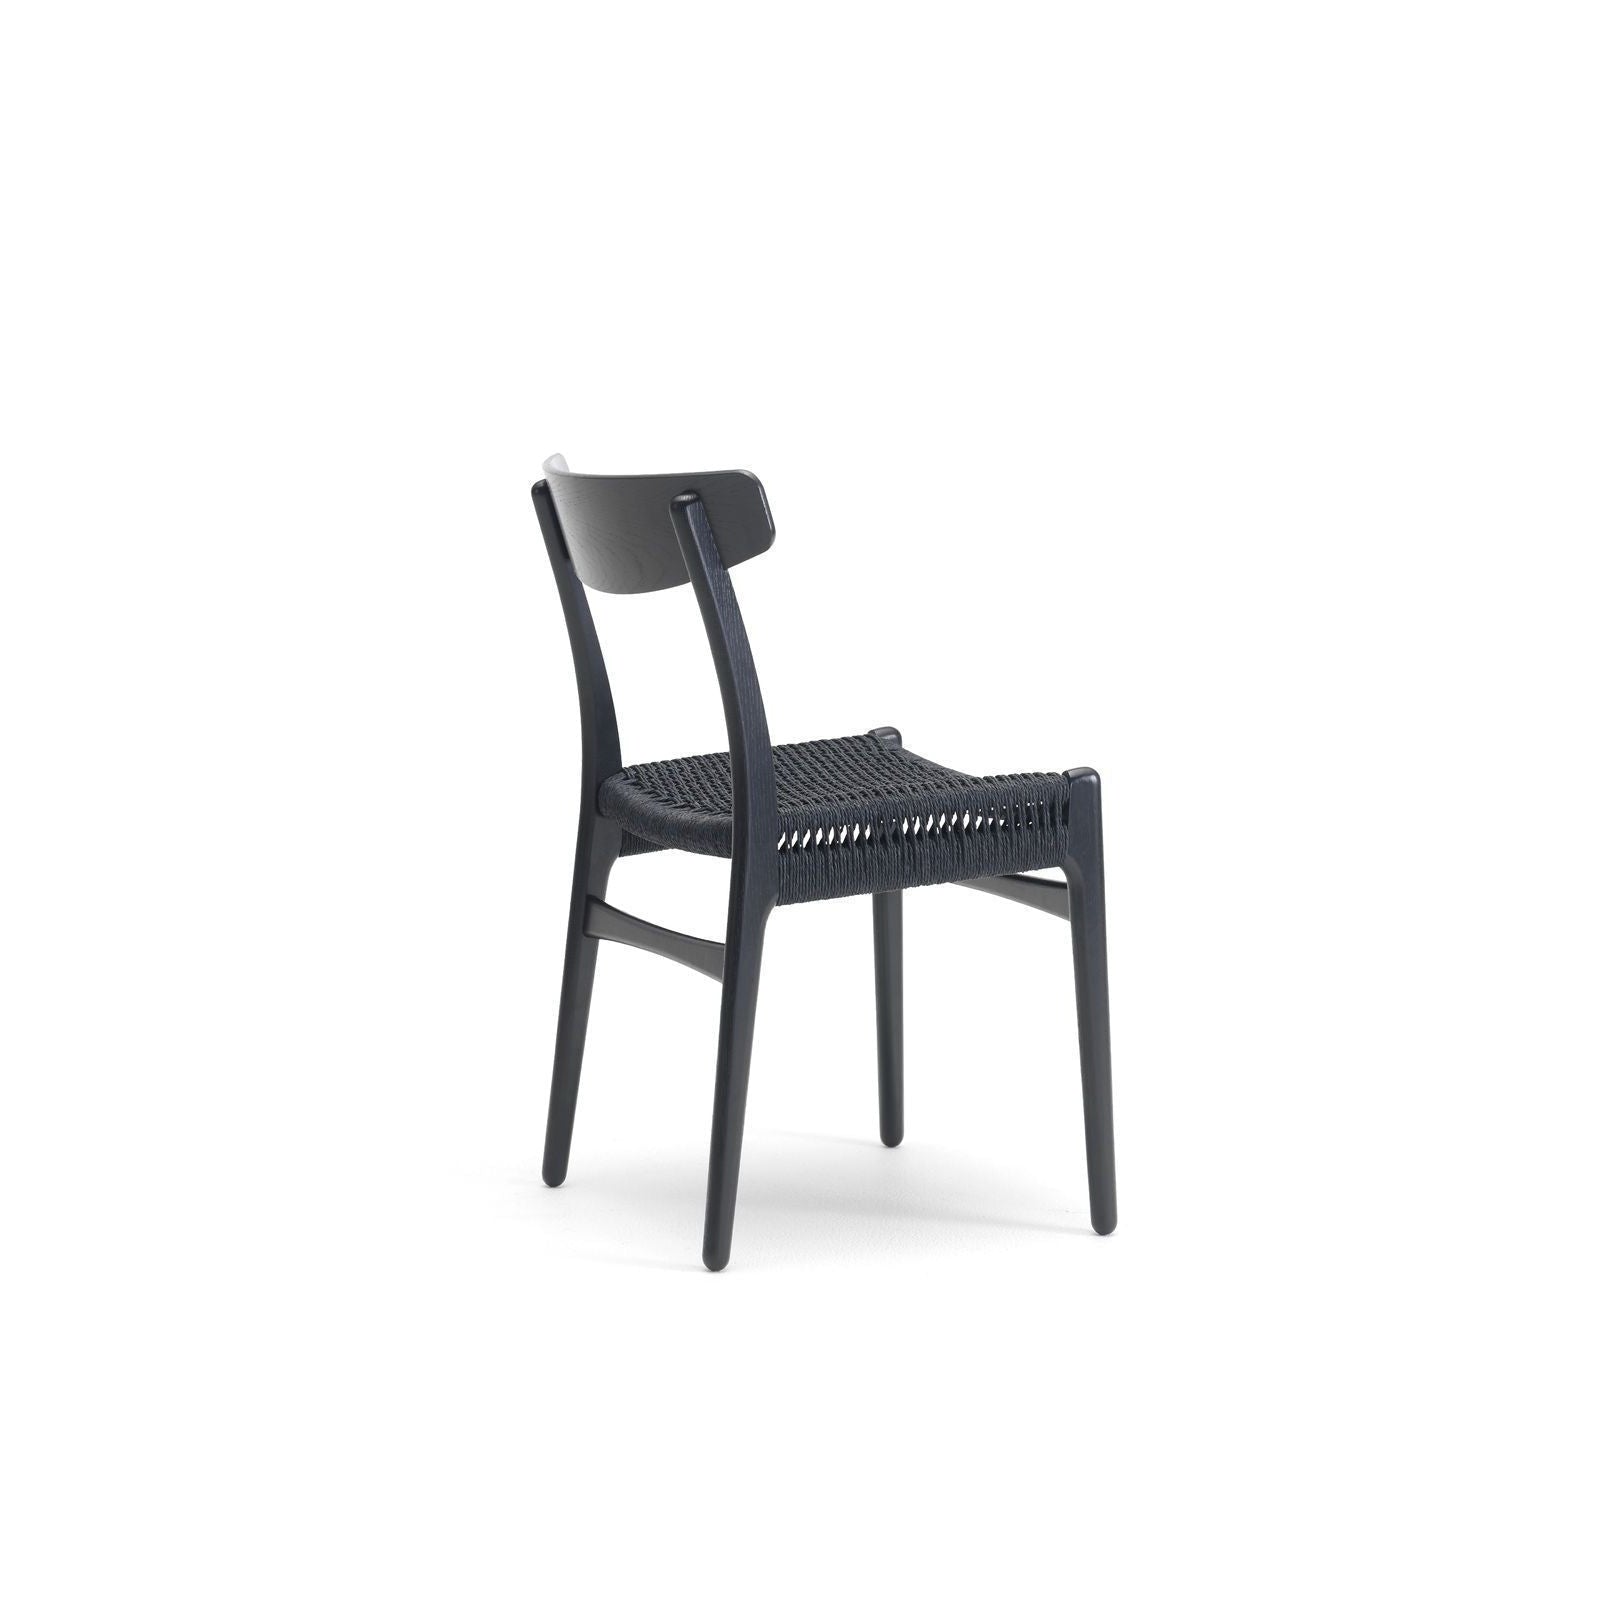 Carl Hansen CH23 -stoel, zwart eiken/zwart papiersnoer